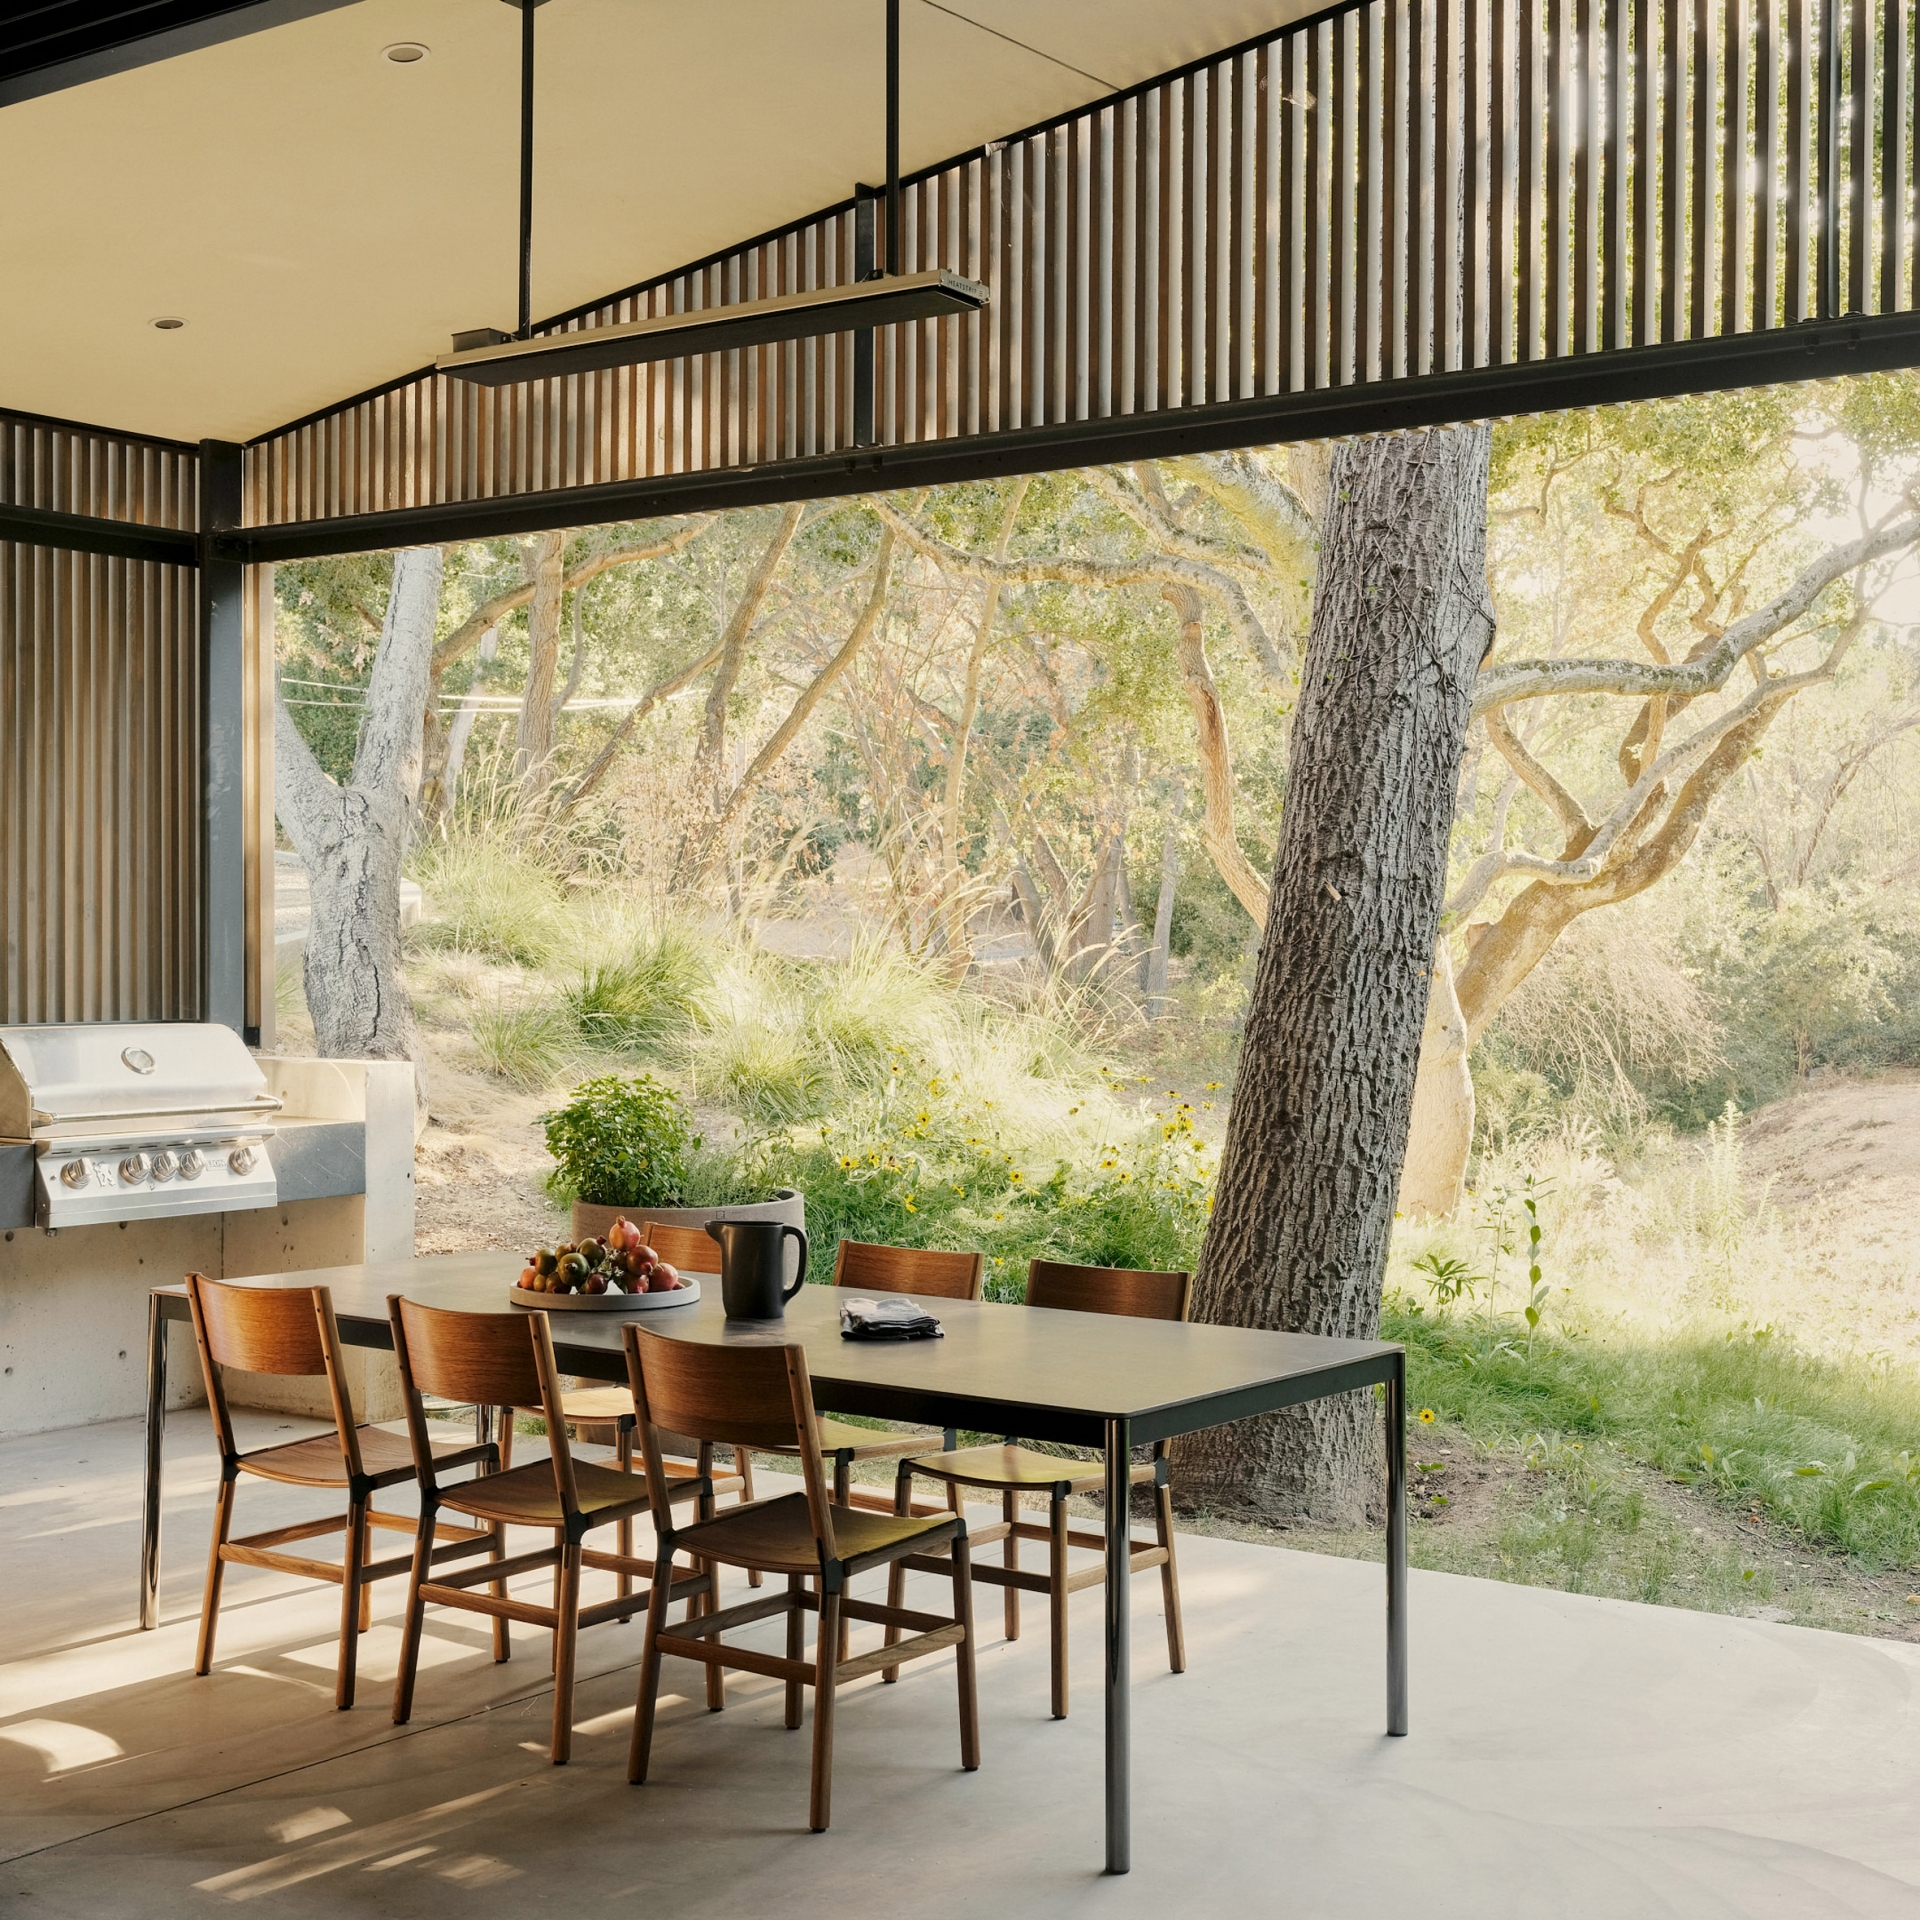 Phòng ăn này nằm trong ngôi nhà thuộc vùng ngoại ô của Thung lũng Silicon, với ô cửa rộng gần như phủ kín bức tường bằng kính trong suốt, nhìn ra bên ngoài với cây sồi lớn vô cùng ấn tượng.